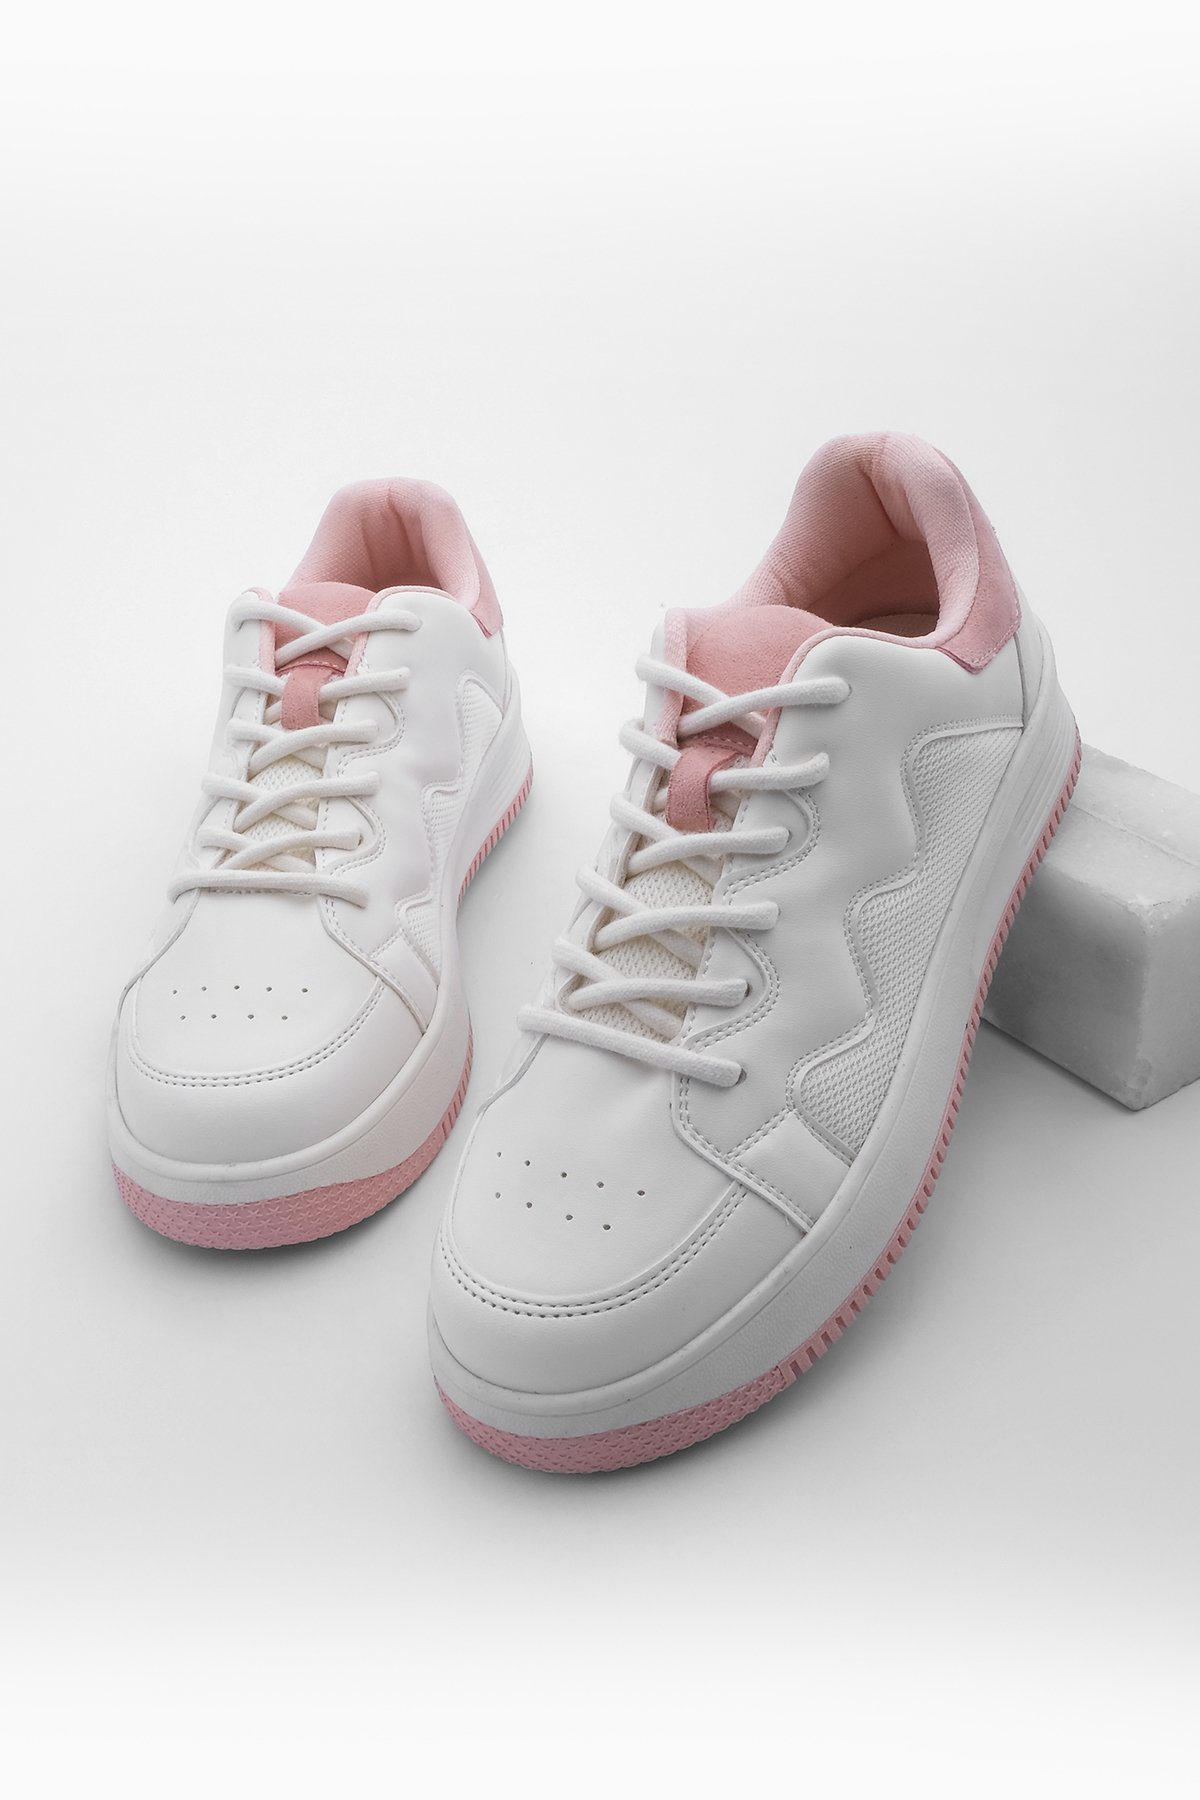 Levně Marjin Women's Sneaker Colored Sole Lace Up Sneakers Ekef Pink